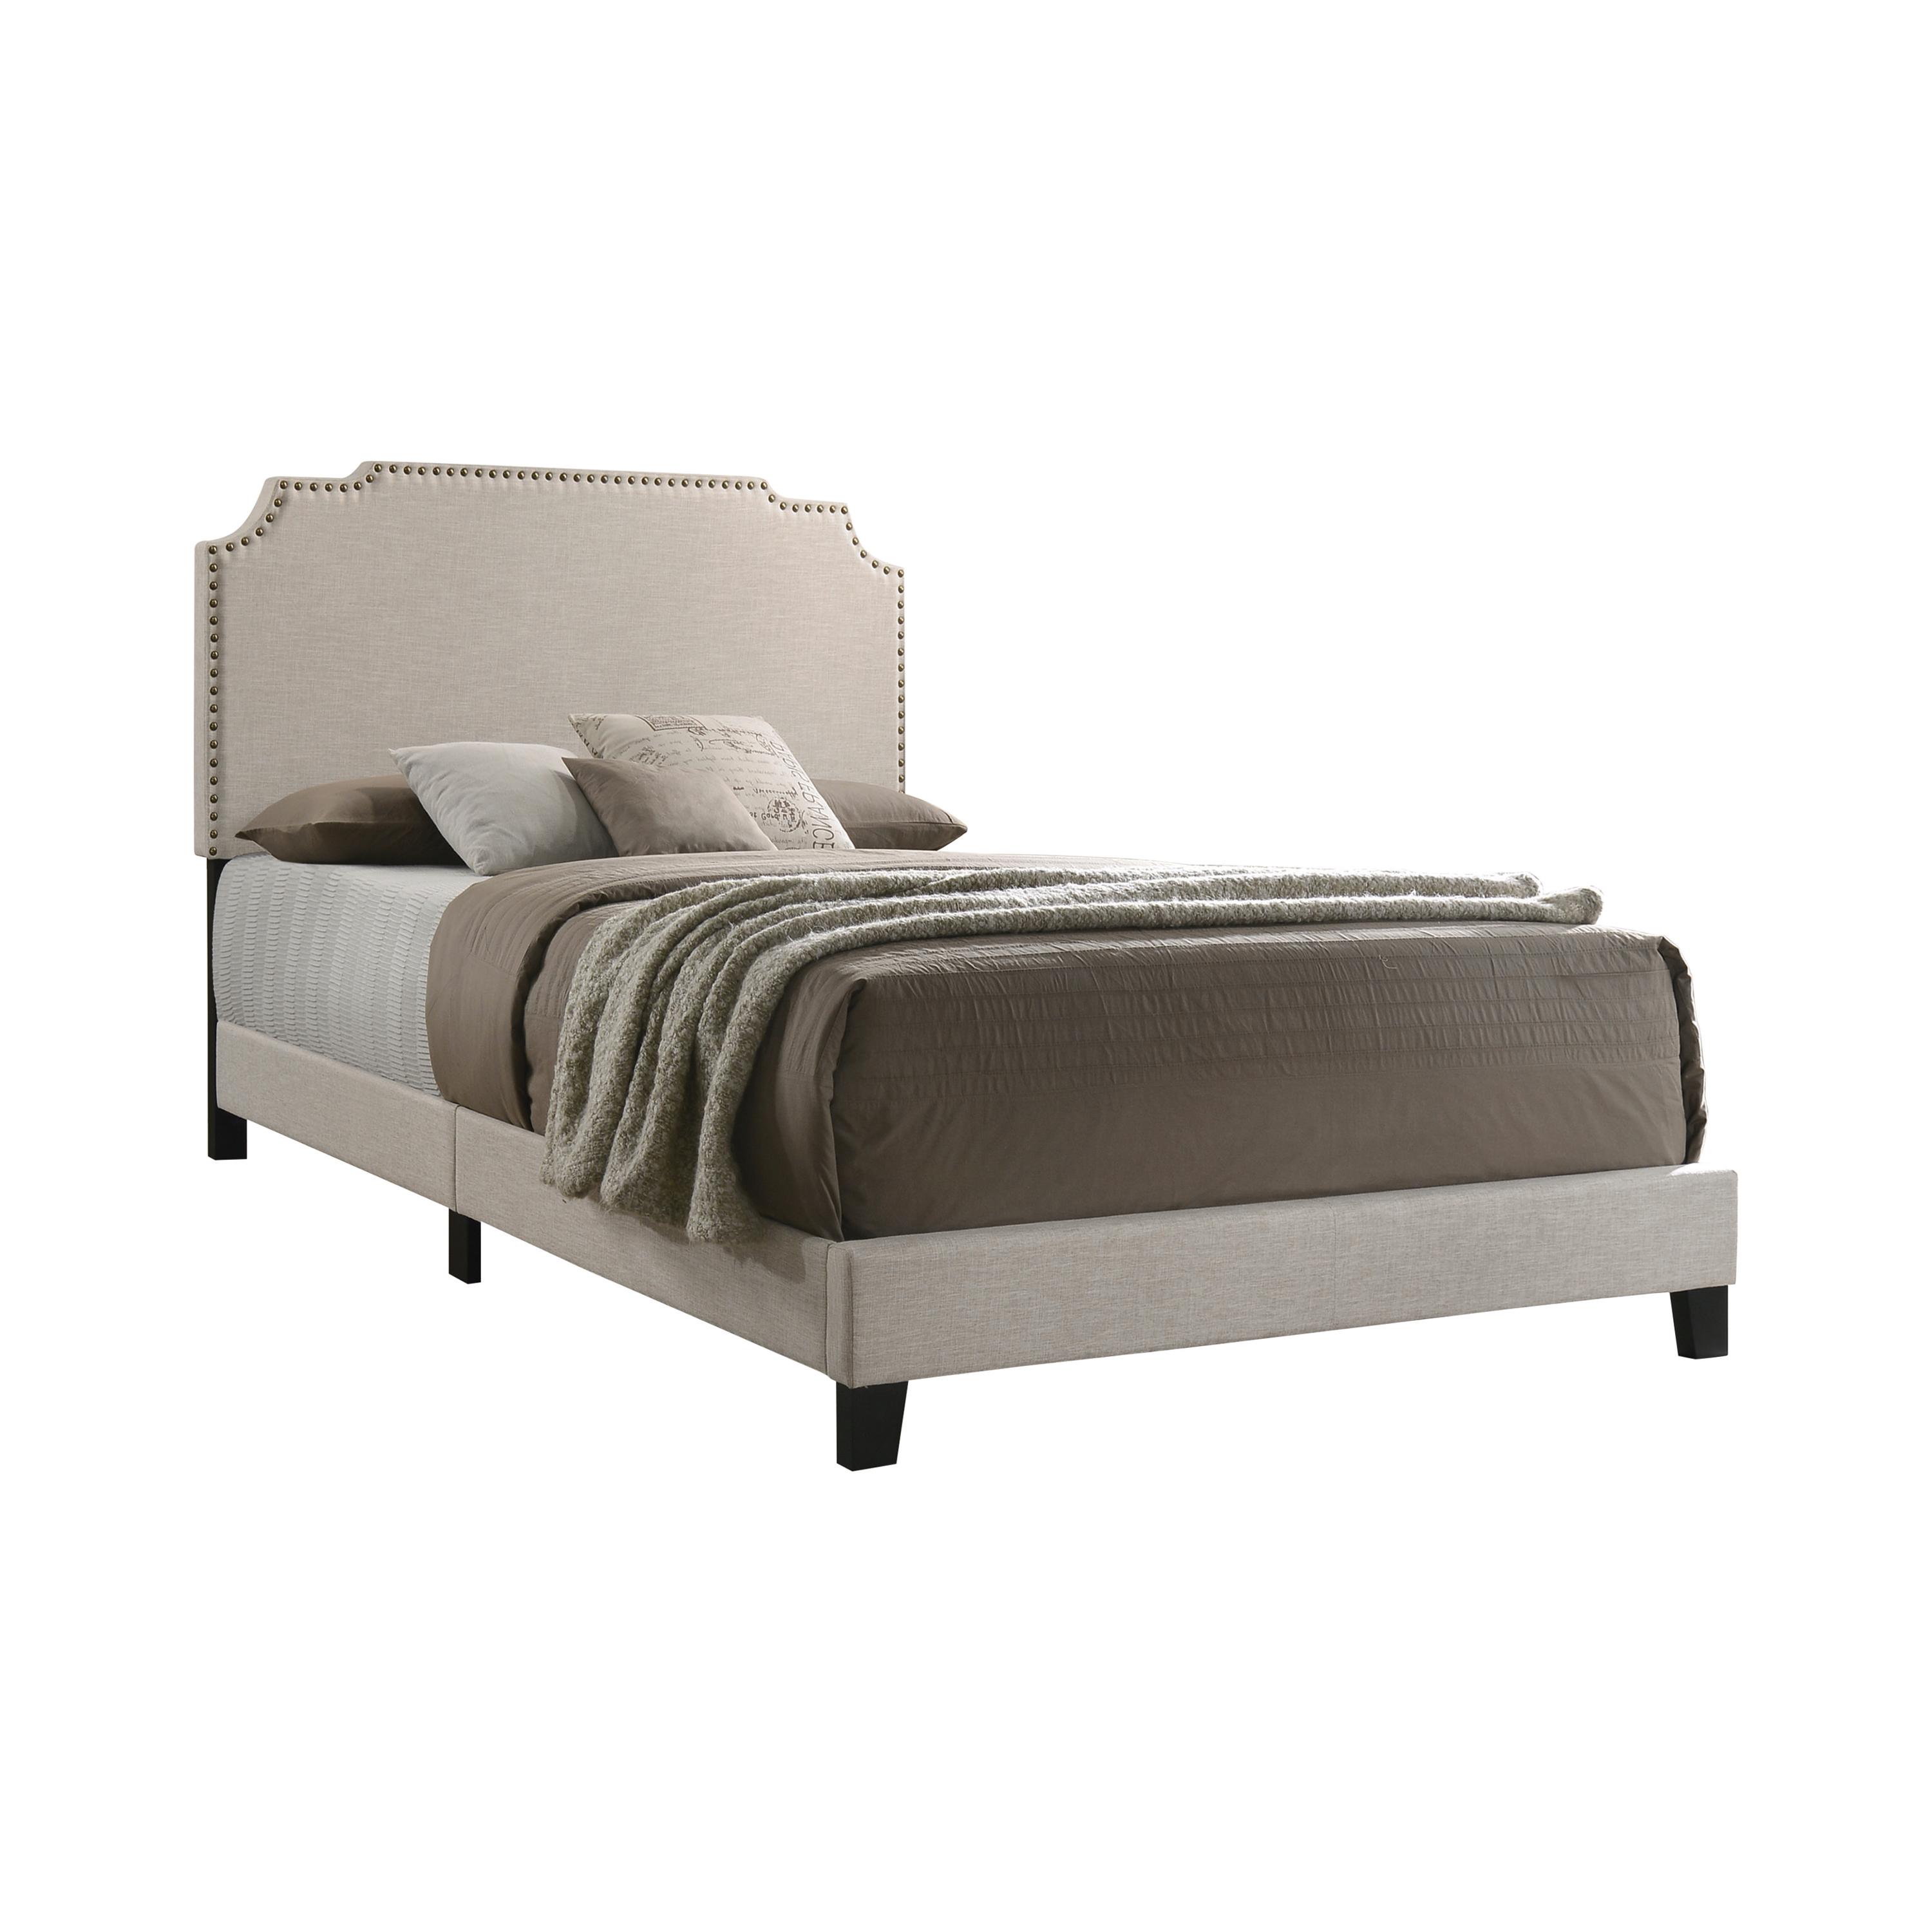 Contemporary Bed 310061Q Tamarac 310061Q in Beige Fabric